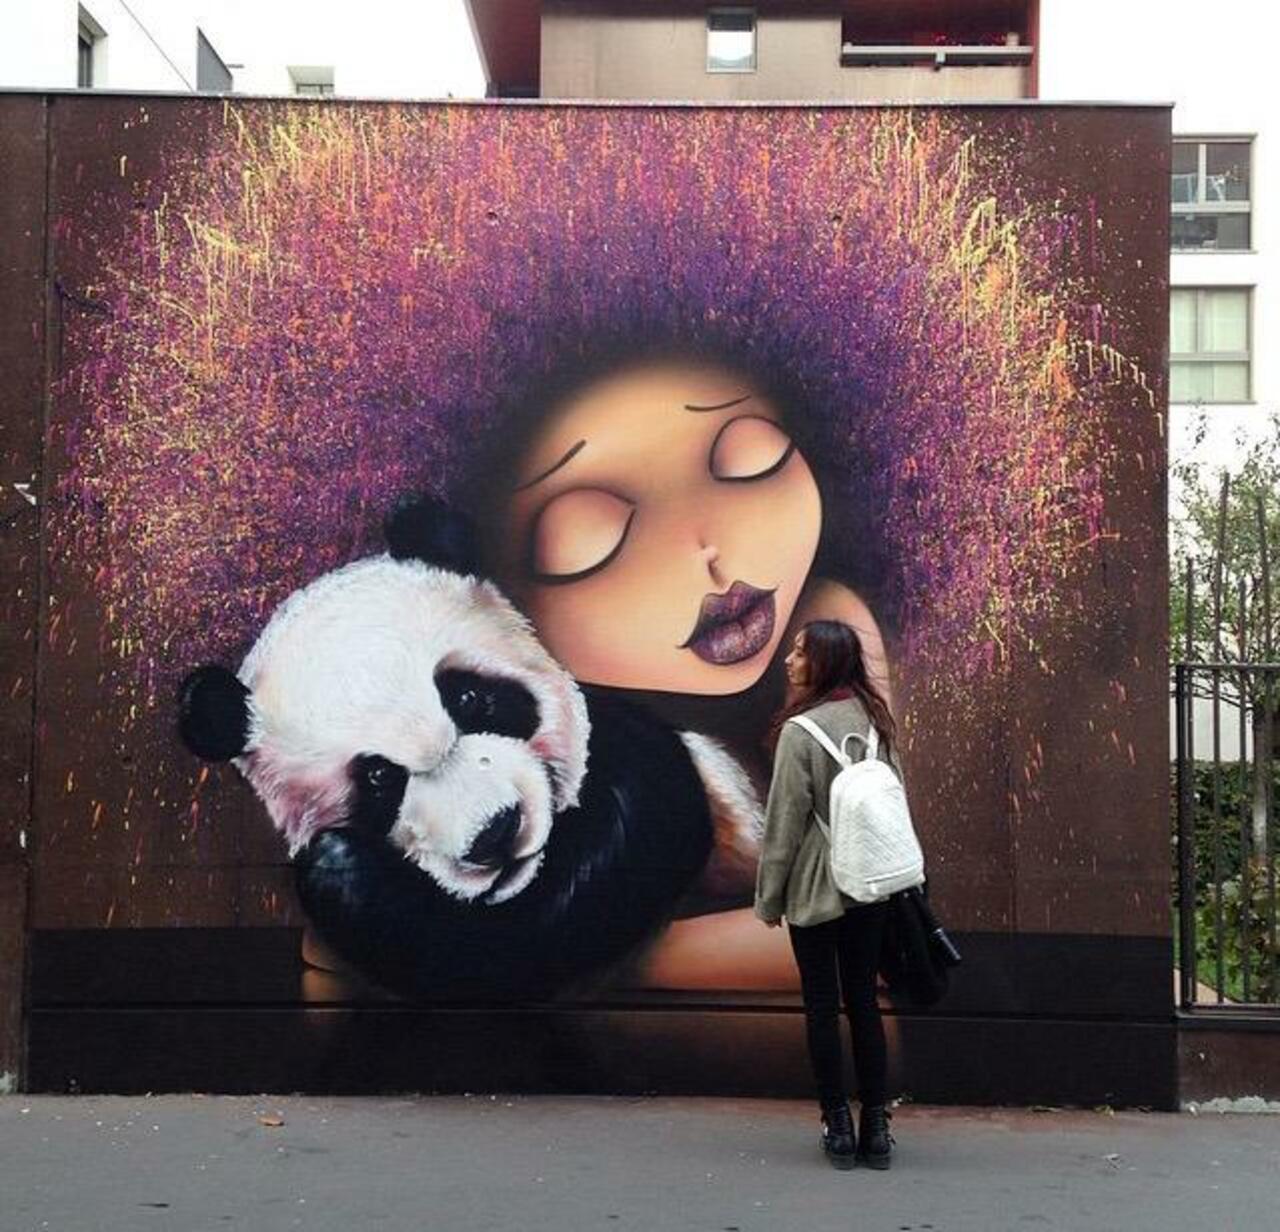 Street Art by VinieGraffiti in Paris 

#art #graffiti #mural #streetart http://t.co/WiwSjhTVqT